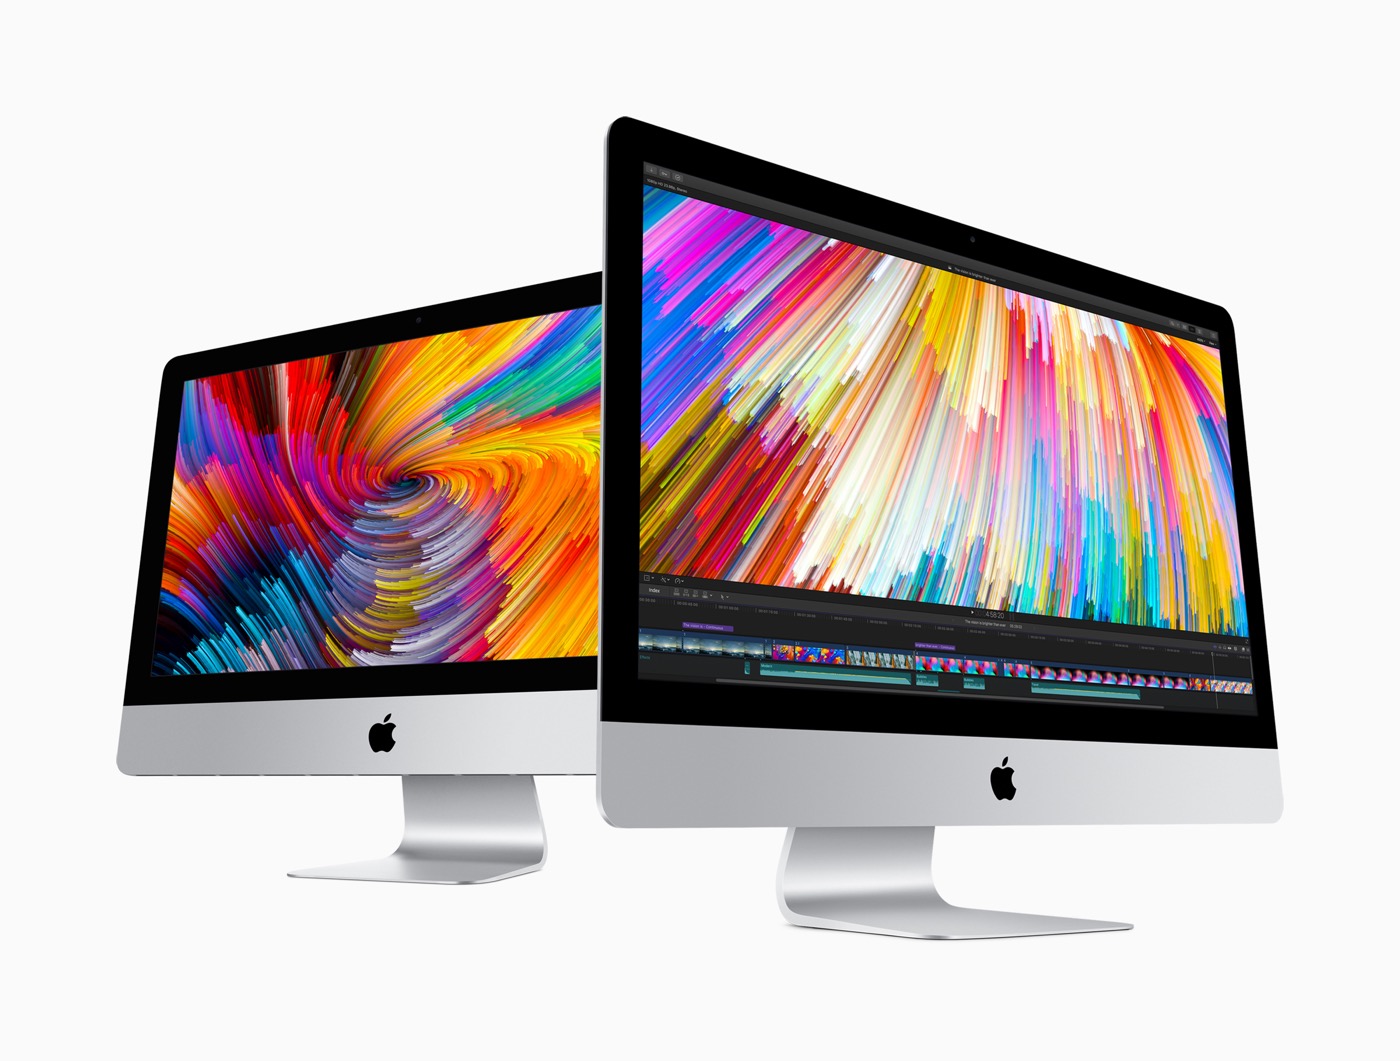 ｢iMac 27インチ 5Kディスプレイモデル (2017)｣の開封&分解映像